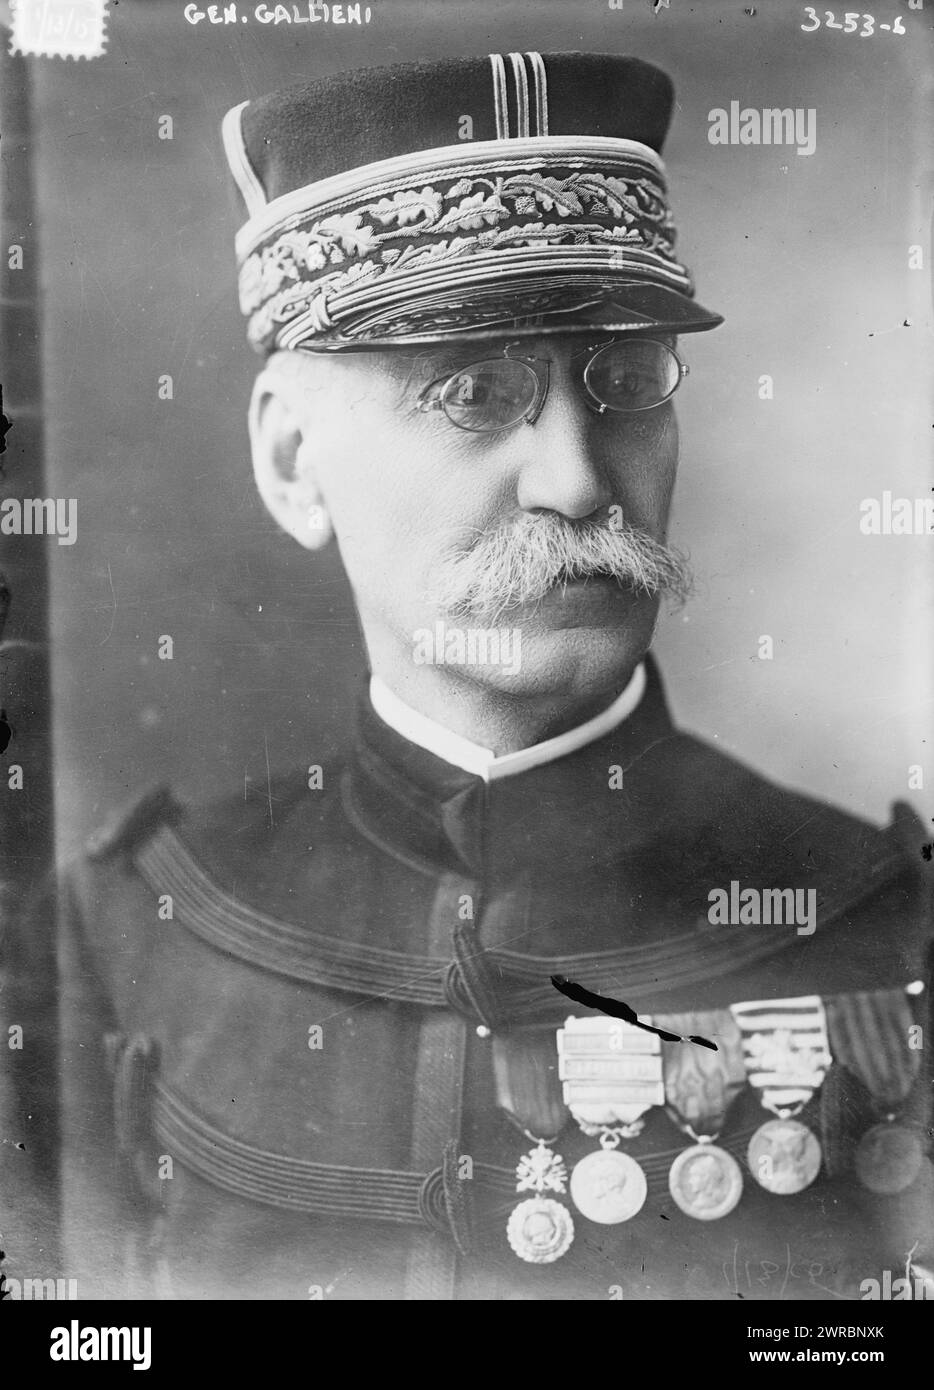 General Gallieni, Foto zeigt den französischen General Joseph-Simon Galliéni (1849–1916), der von 1914 bis 1915 während des Ersten Weltkriegs als Militärgouverneur von Paris diente, 13. Januar 1915, Glas-negative, 1 negativ: Glas Stockfoto